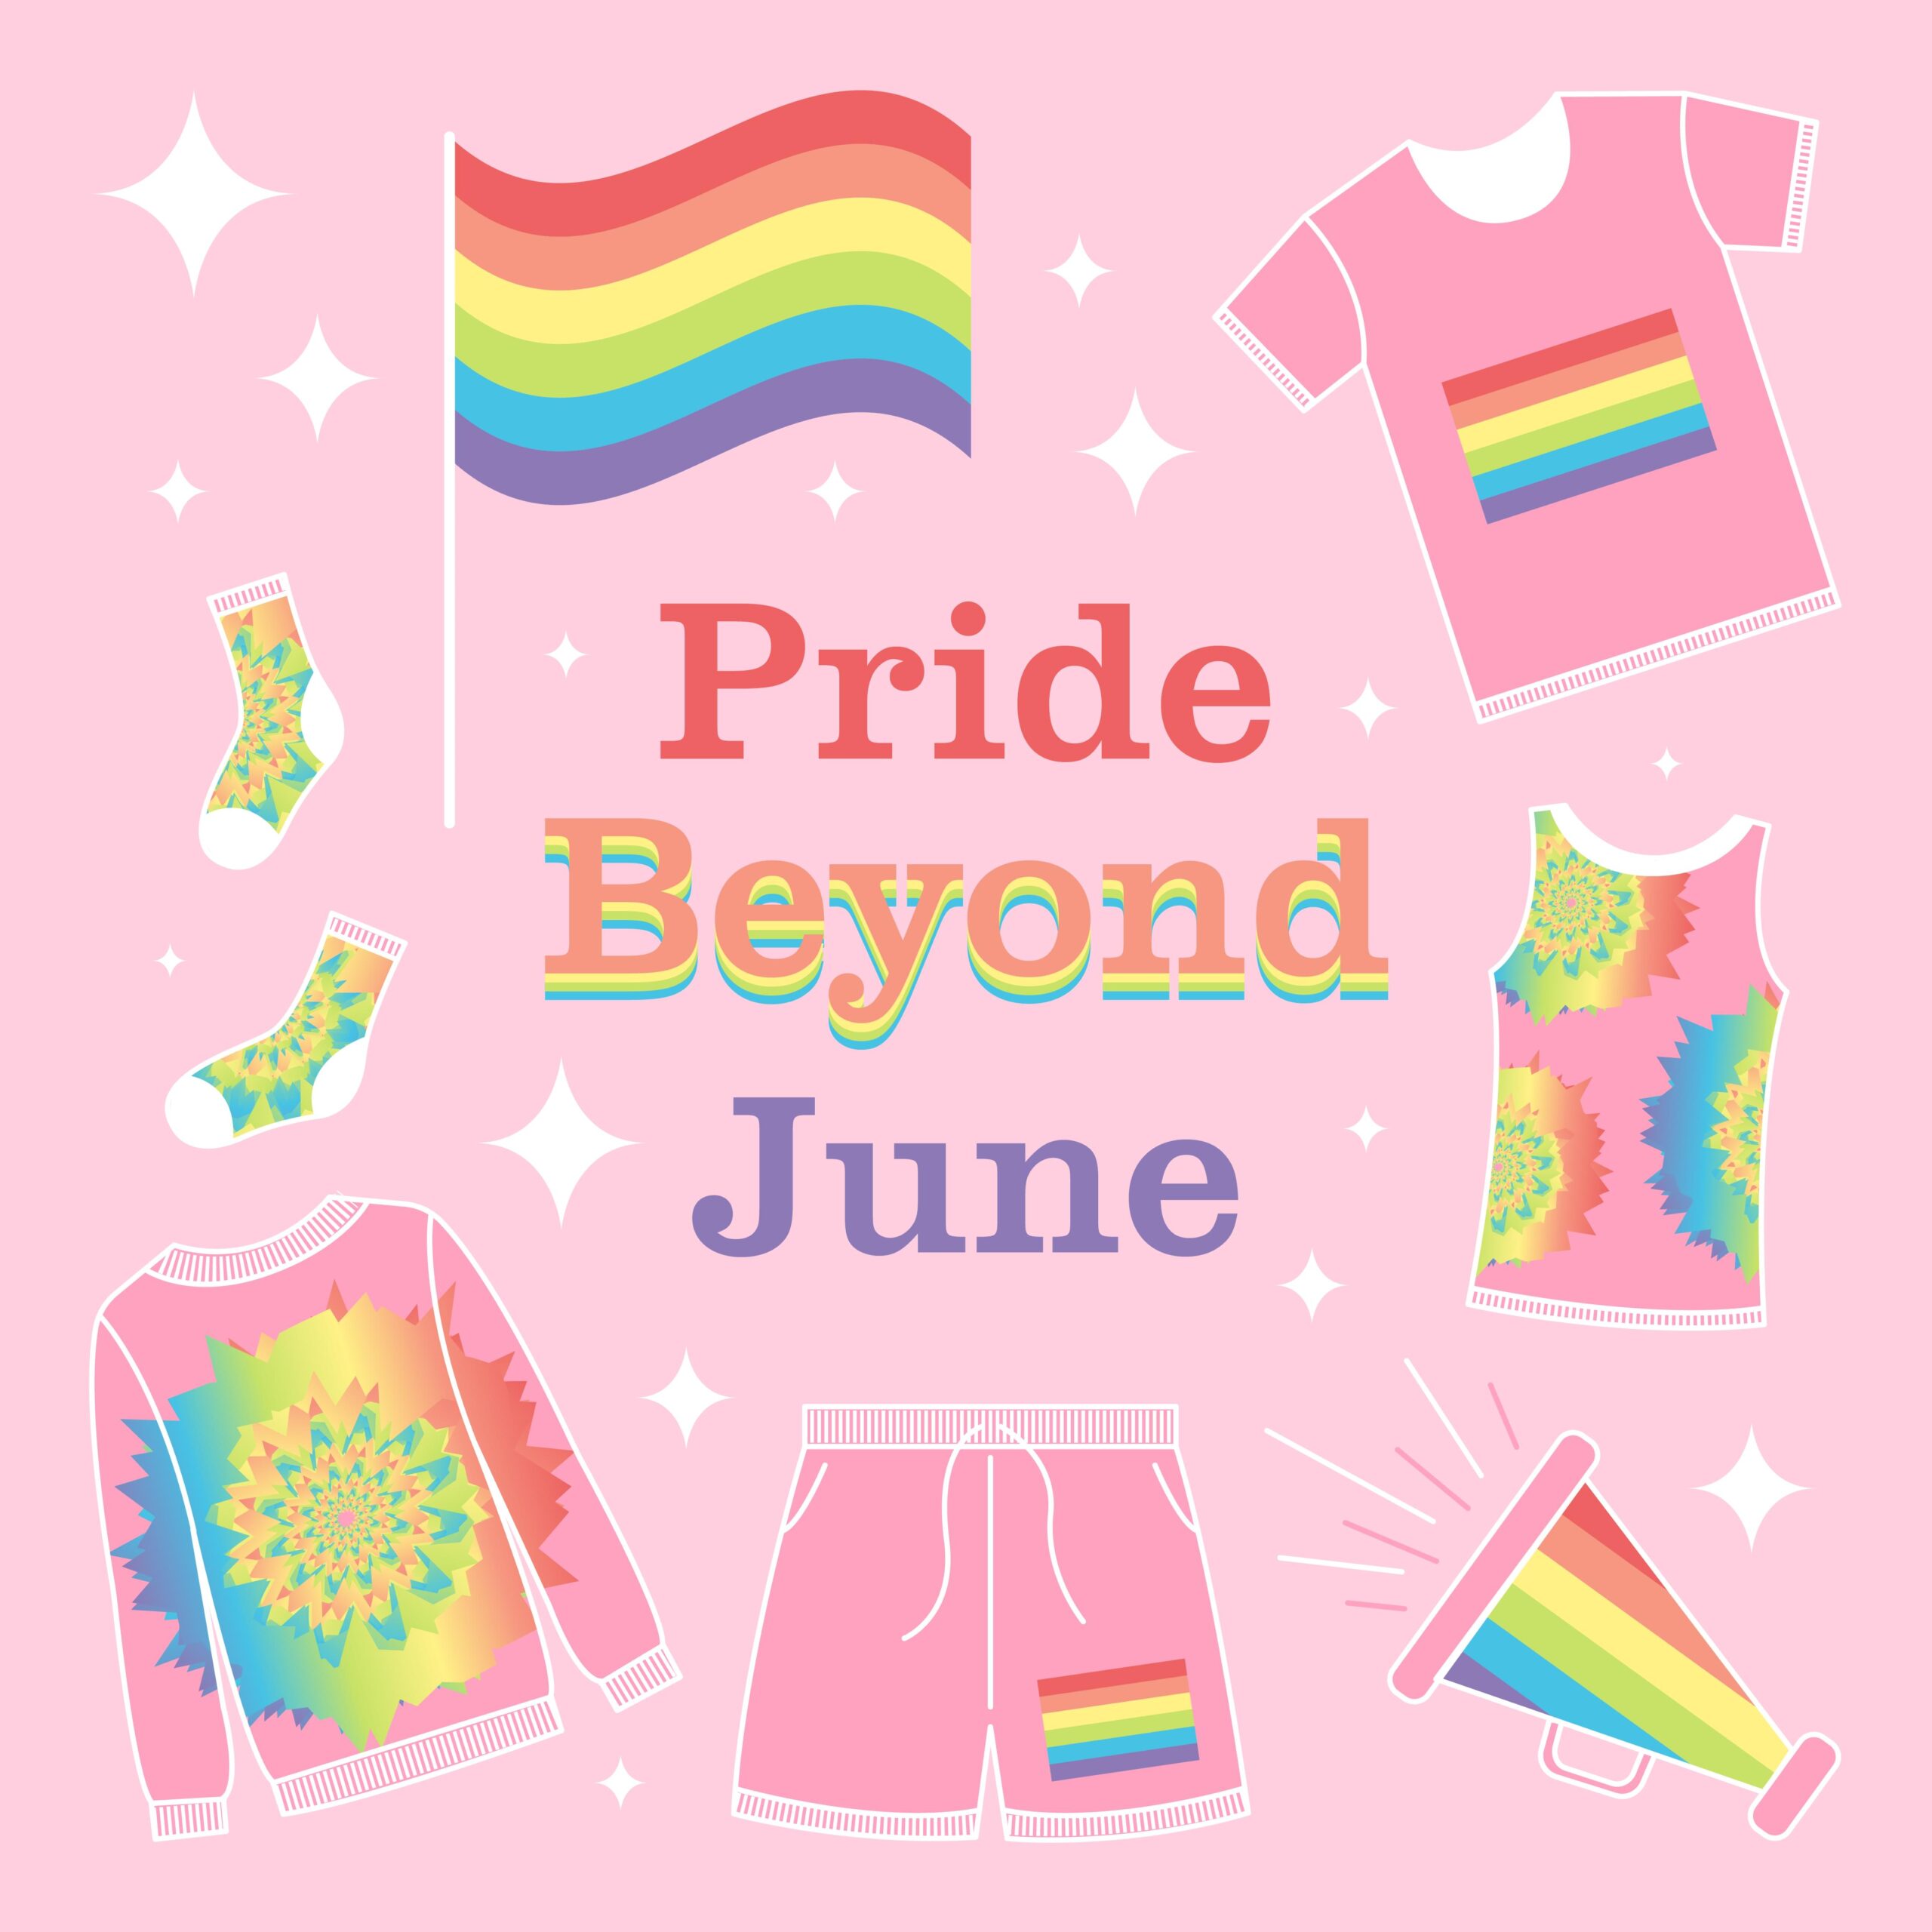 Pride Beyond June